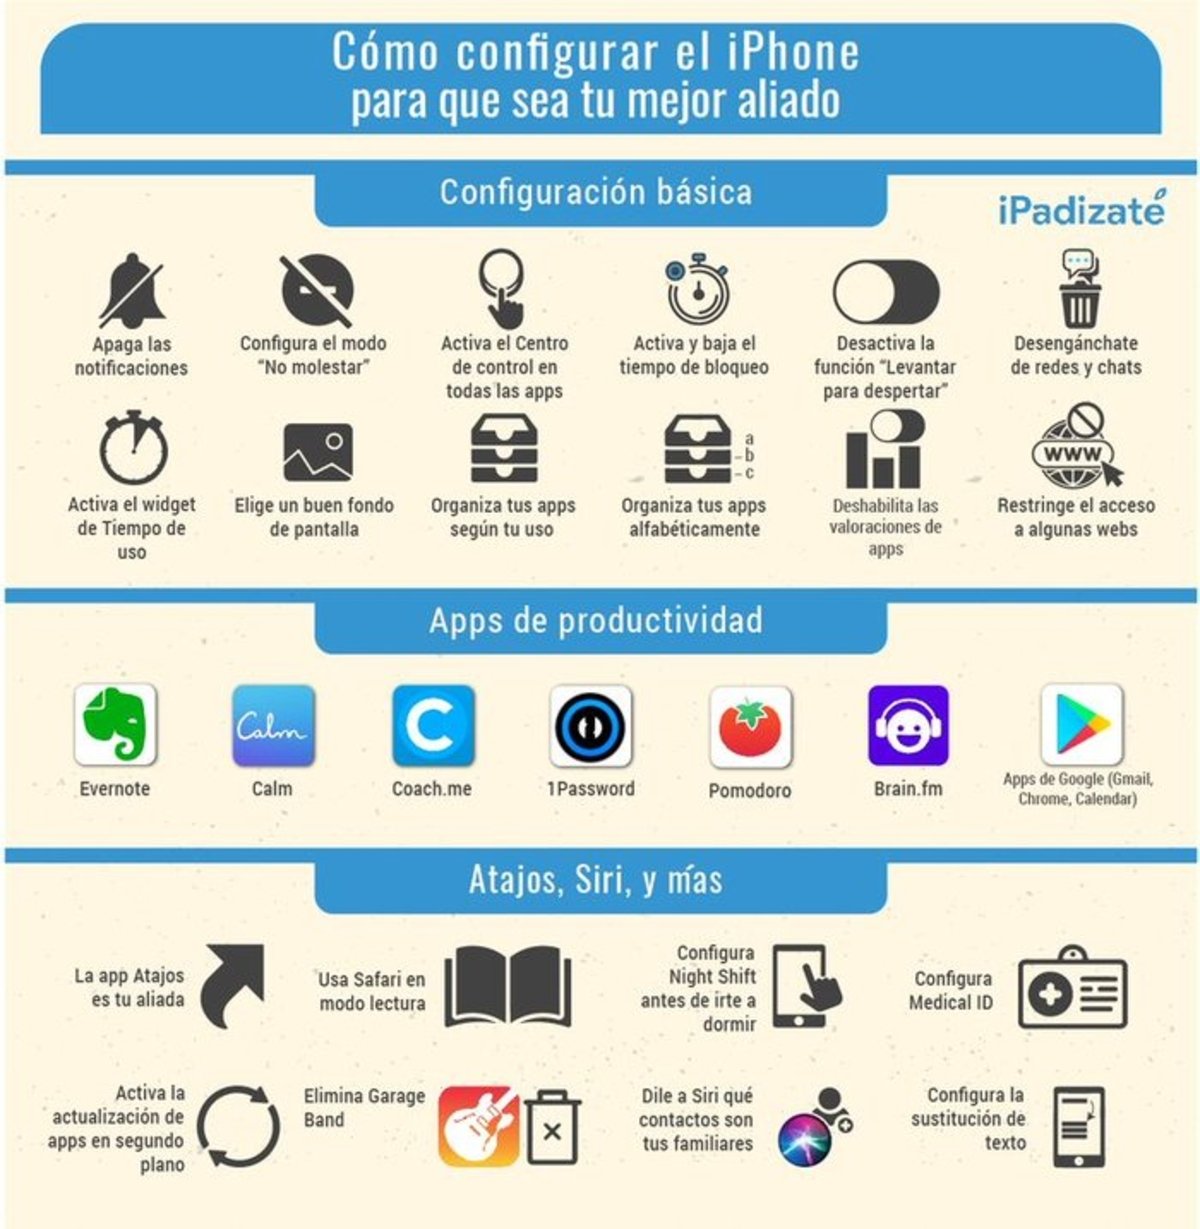 Cómo configurar el iPhone para mejorar la productividad: infografía de iPadizate